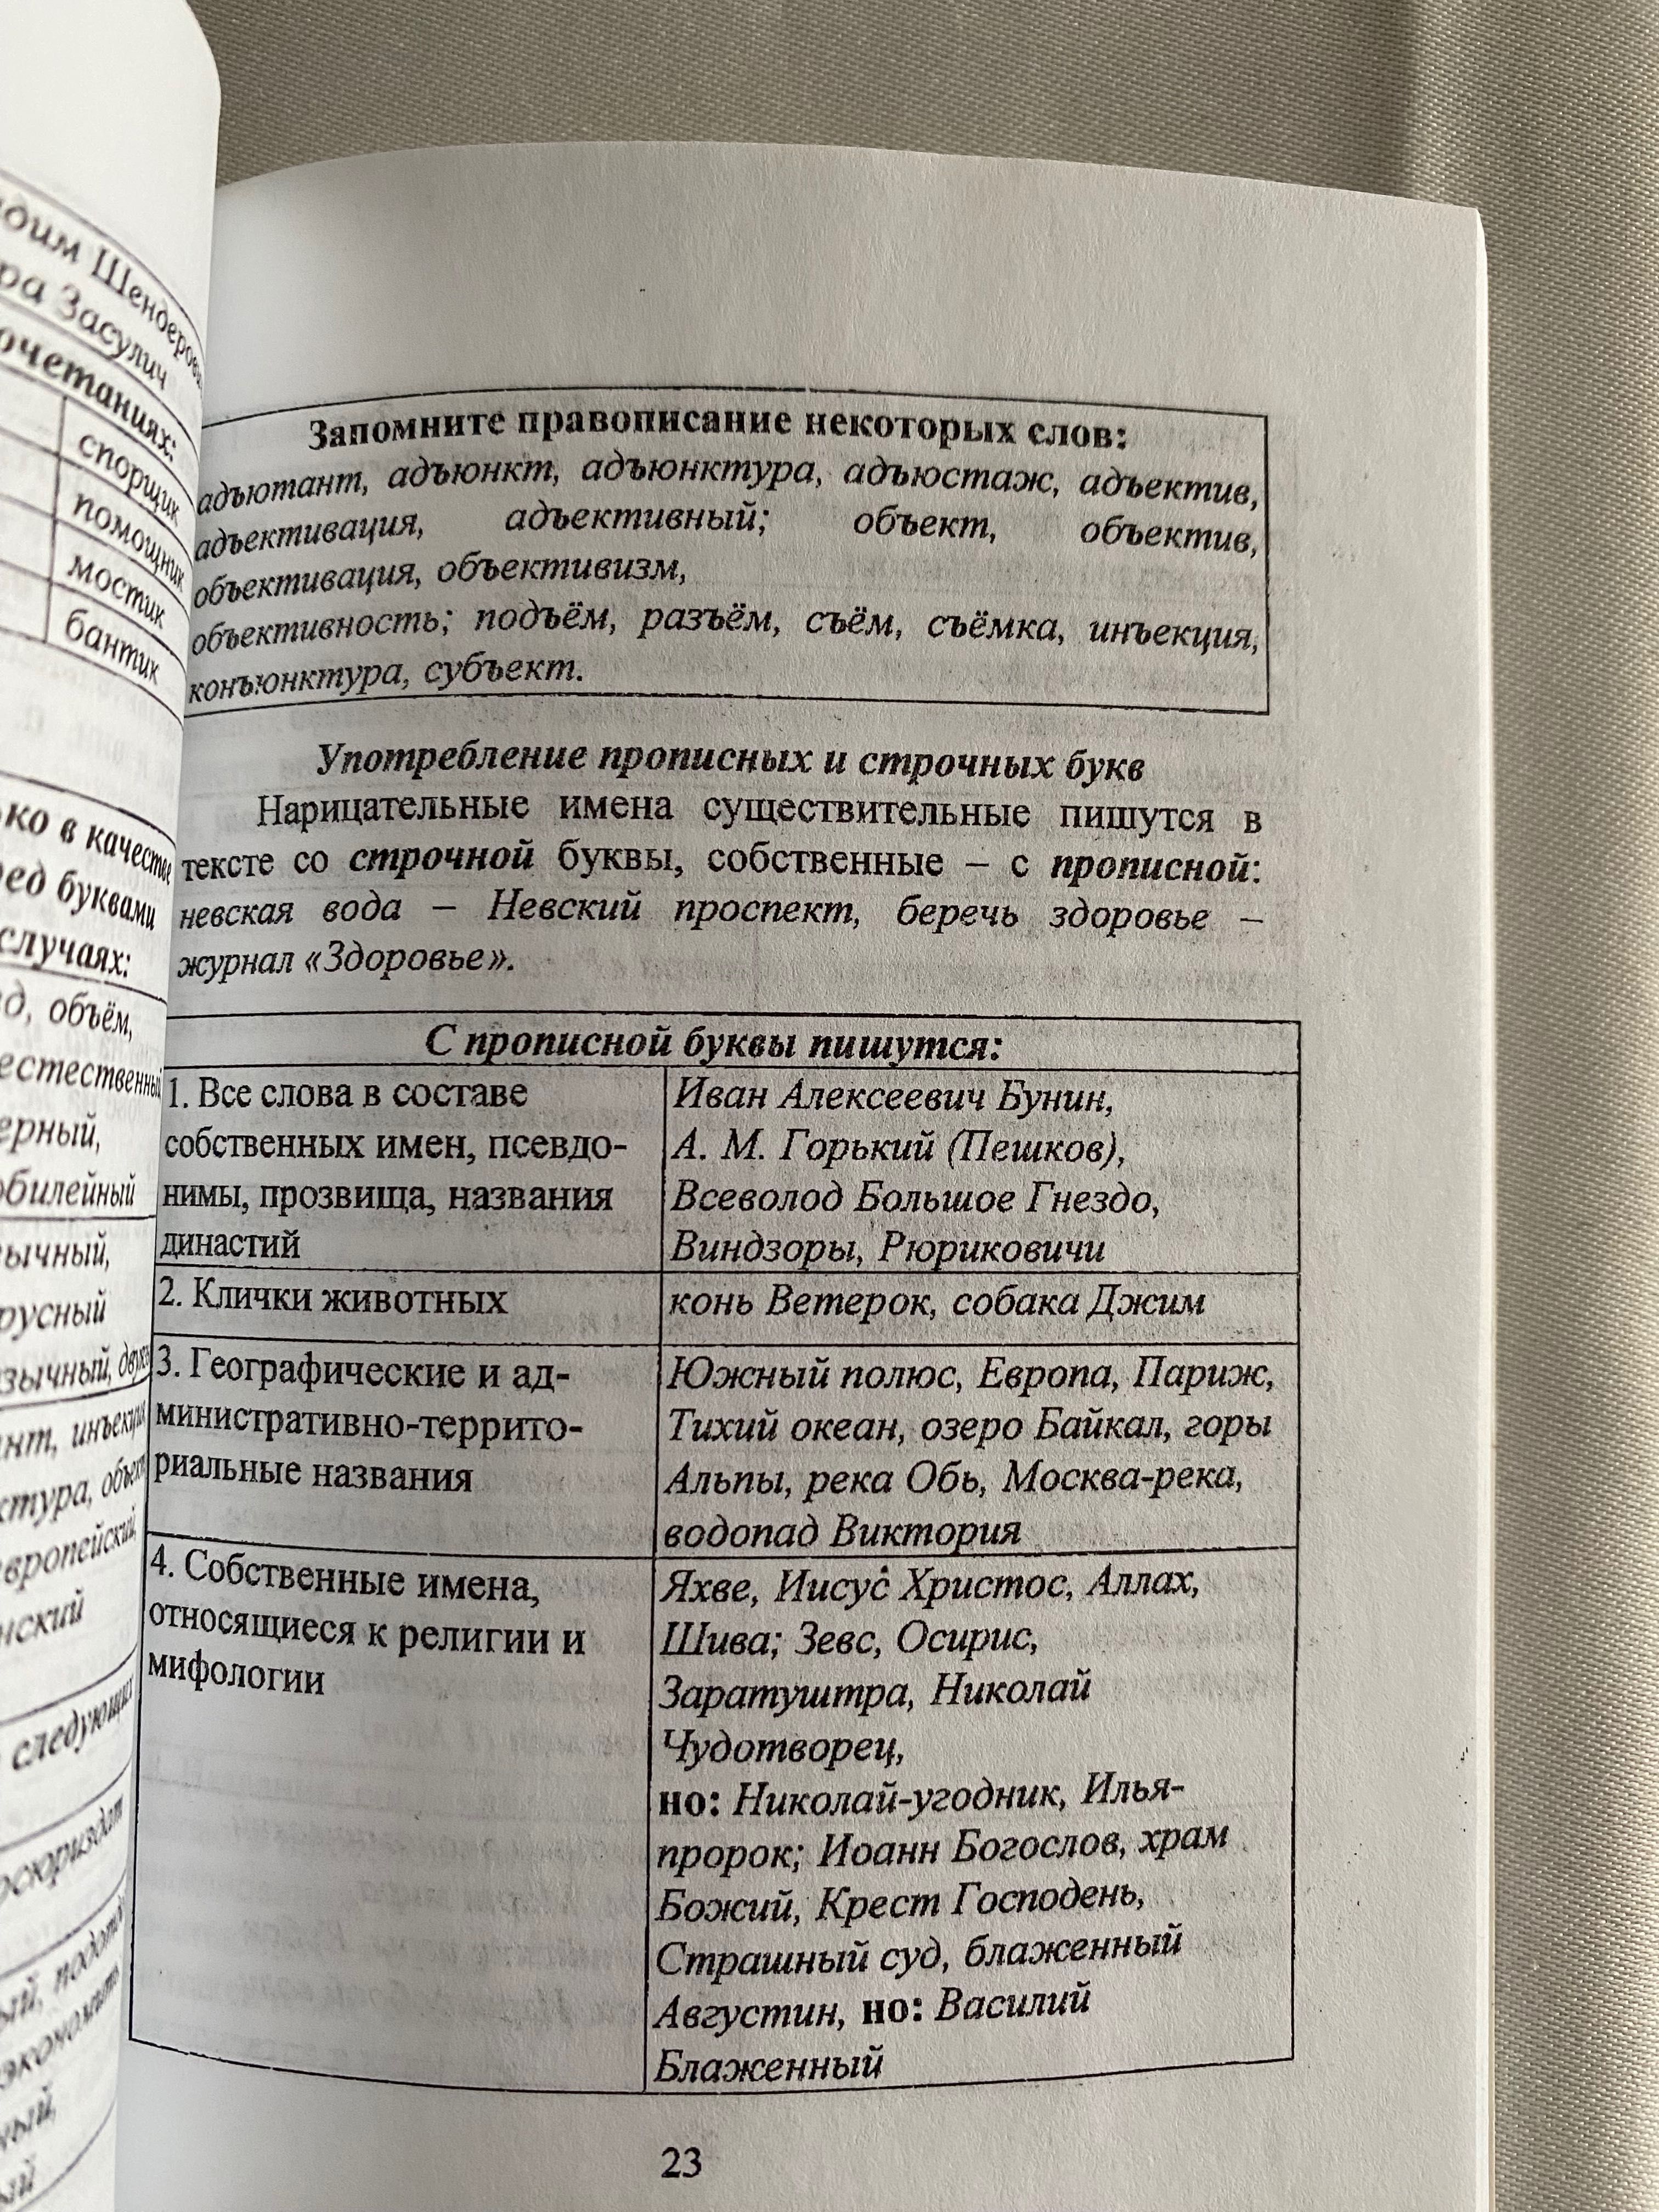 Русский язык Грамматический справочник для школьников и абитуриентов